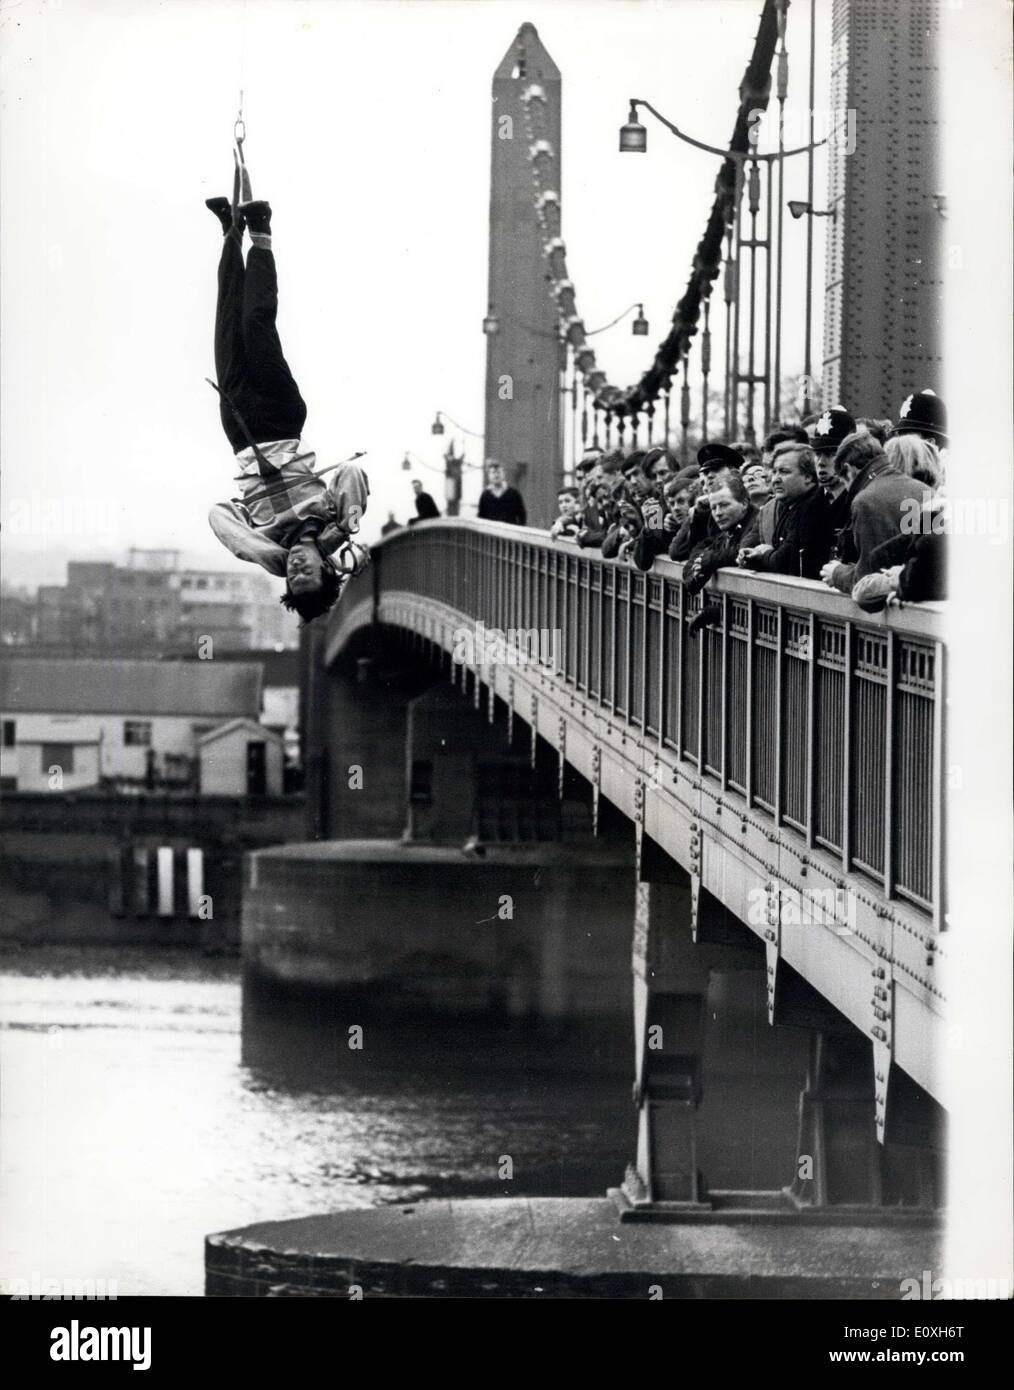 Le 19 décembre 1966 - défi Escapologist accepte de s'échapper d'une camisole de force si suspendu à l'envers sur Thames : Timothy Dill-Russell, conseiller l'assassin pour la comédie musicale "'Man of Magic'' au Piccadilly Theatre aujourd'hui a tenté un style Houdini échapper à un carcan alors que suspendu par ses talons à l'envers d'une grue sur la Tamise à Chelsea Bridge. Il a été mis au défi de le faire par Stuart Damon, qui joue dans le spectacle de Houdini Banque D'Images